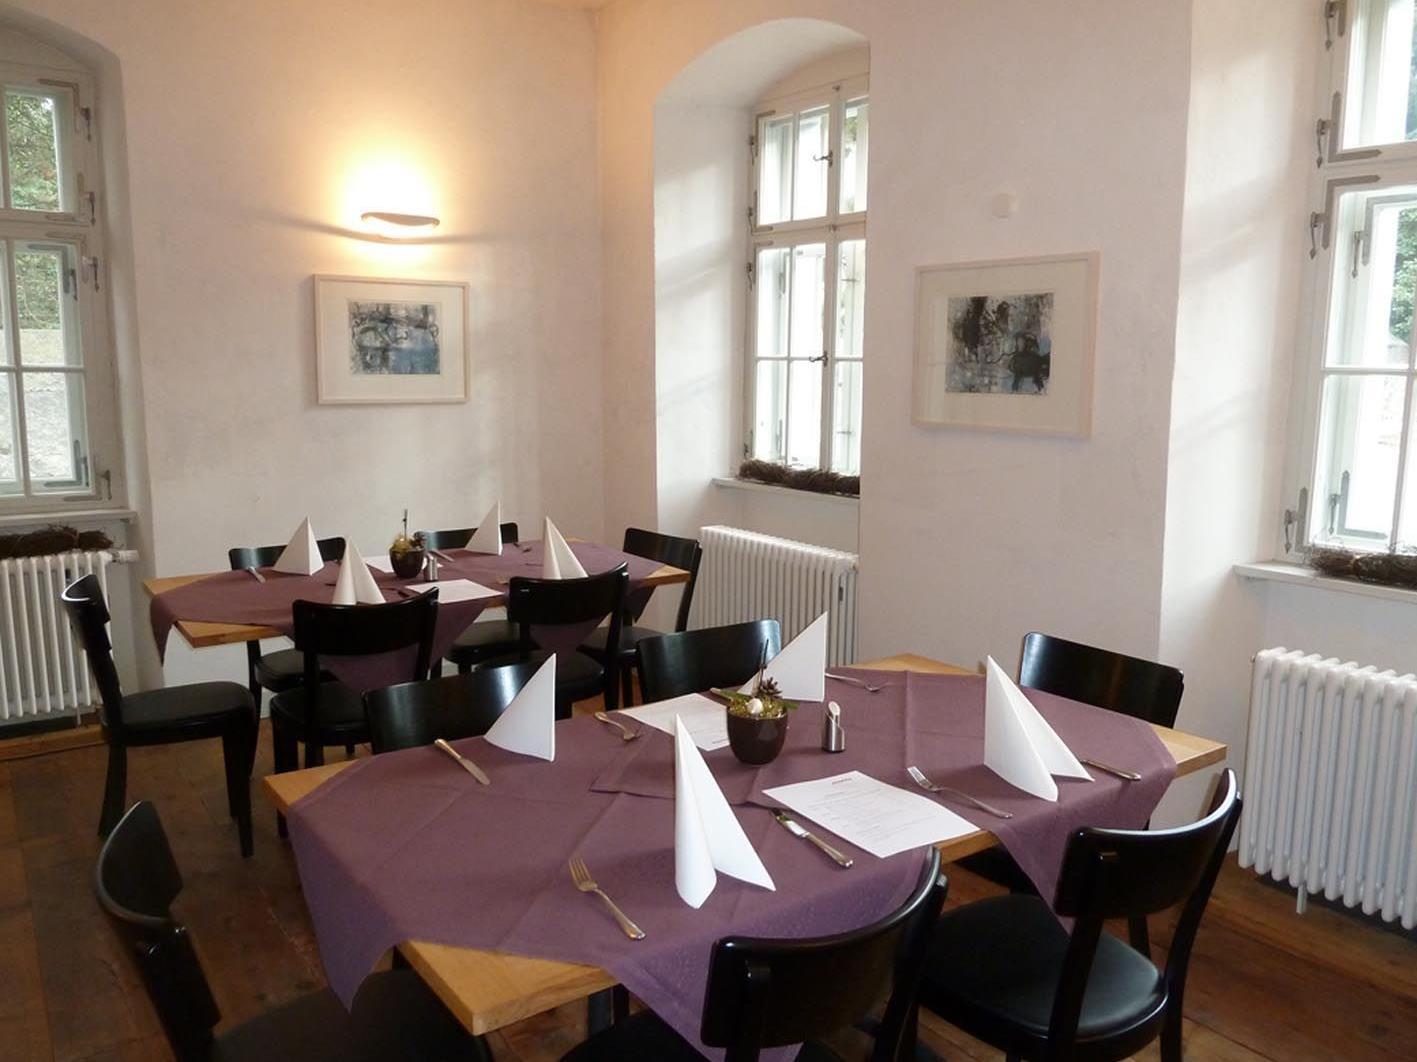 Das Restaurant „Moritz“ lädt am Samstag zur Weinverkostung mit Degustationsmenü.